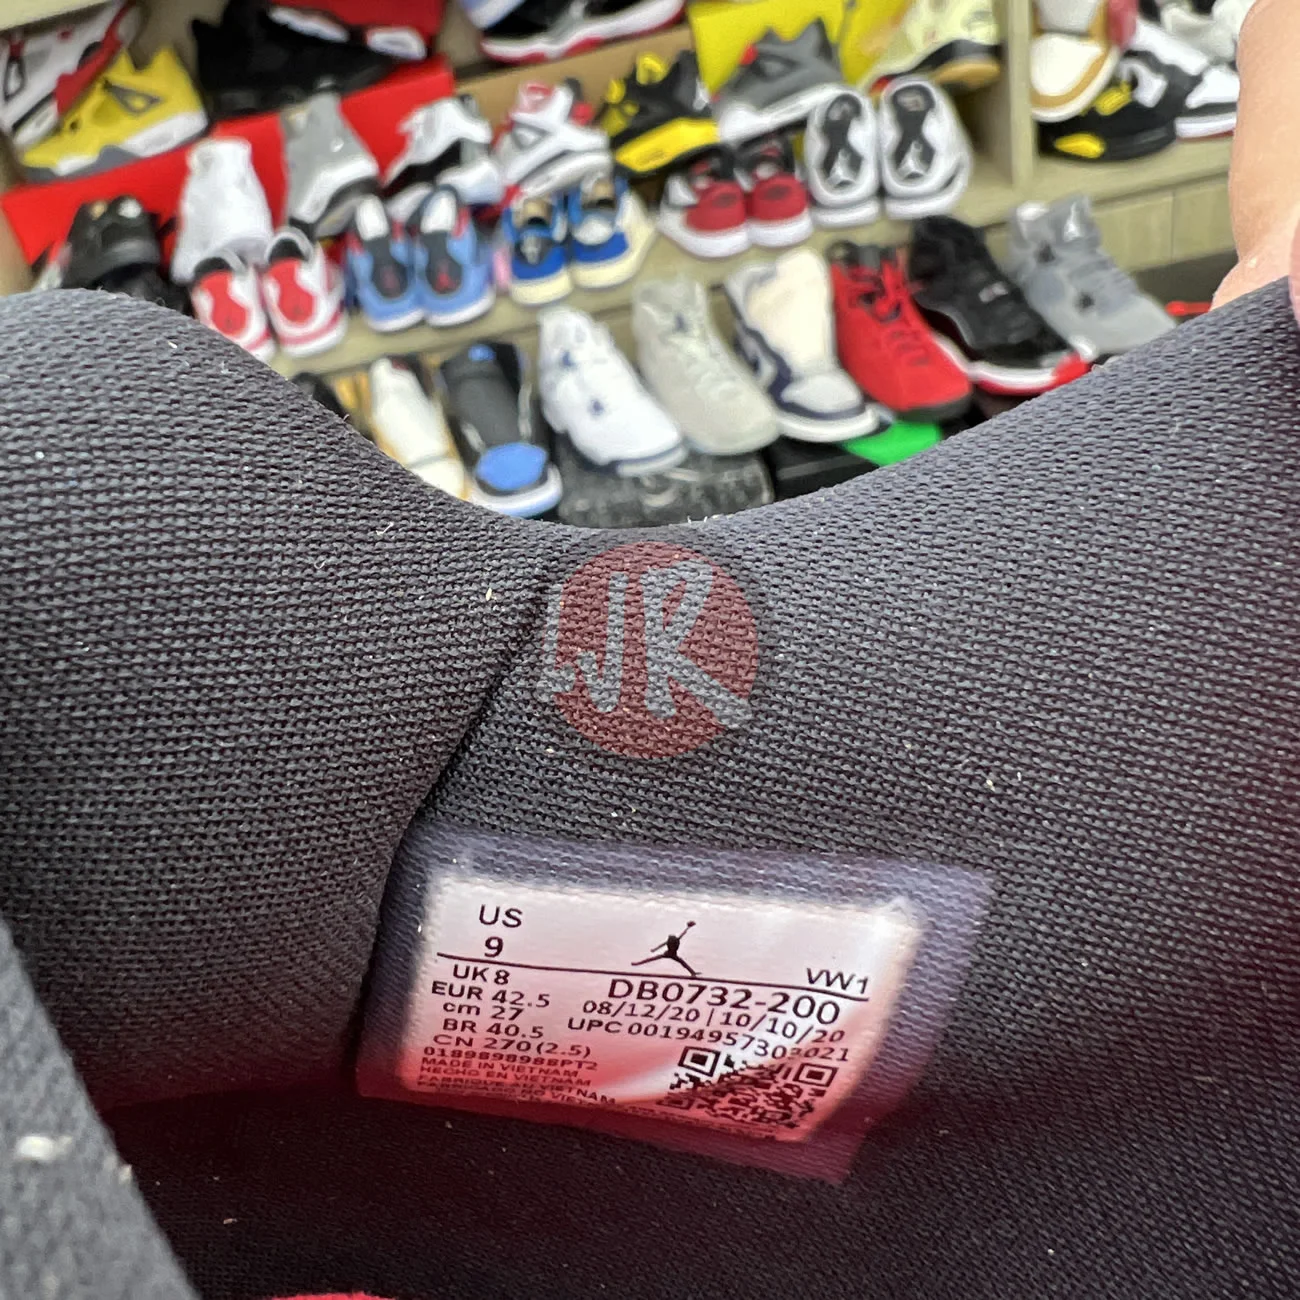 Air Jordan 4 Retro Taupe Haze Db0732 200 Ljr Sneakers (22) - bc-ljr.net